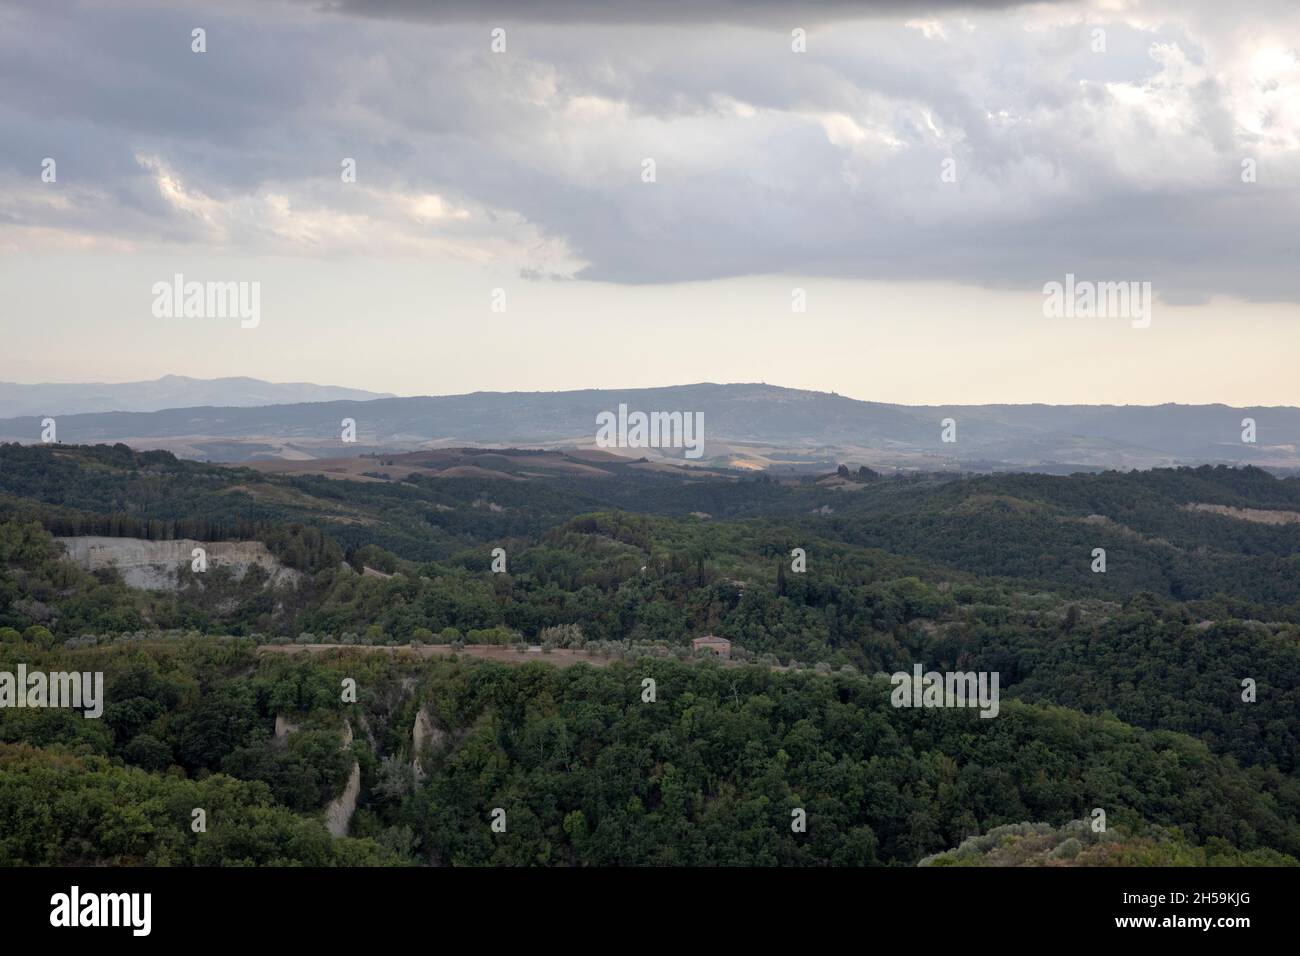 Vista del paisaje desde el pueblo de Chiusure, Asciano, Toscana, Italia Foto de stock